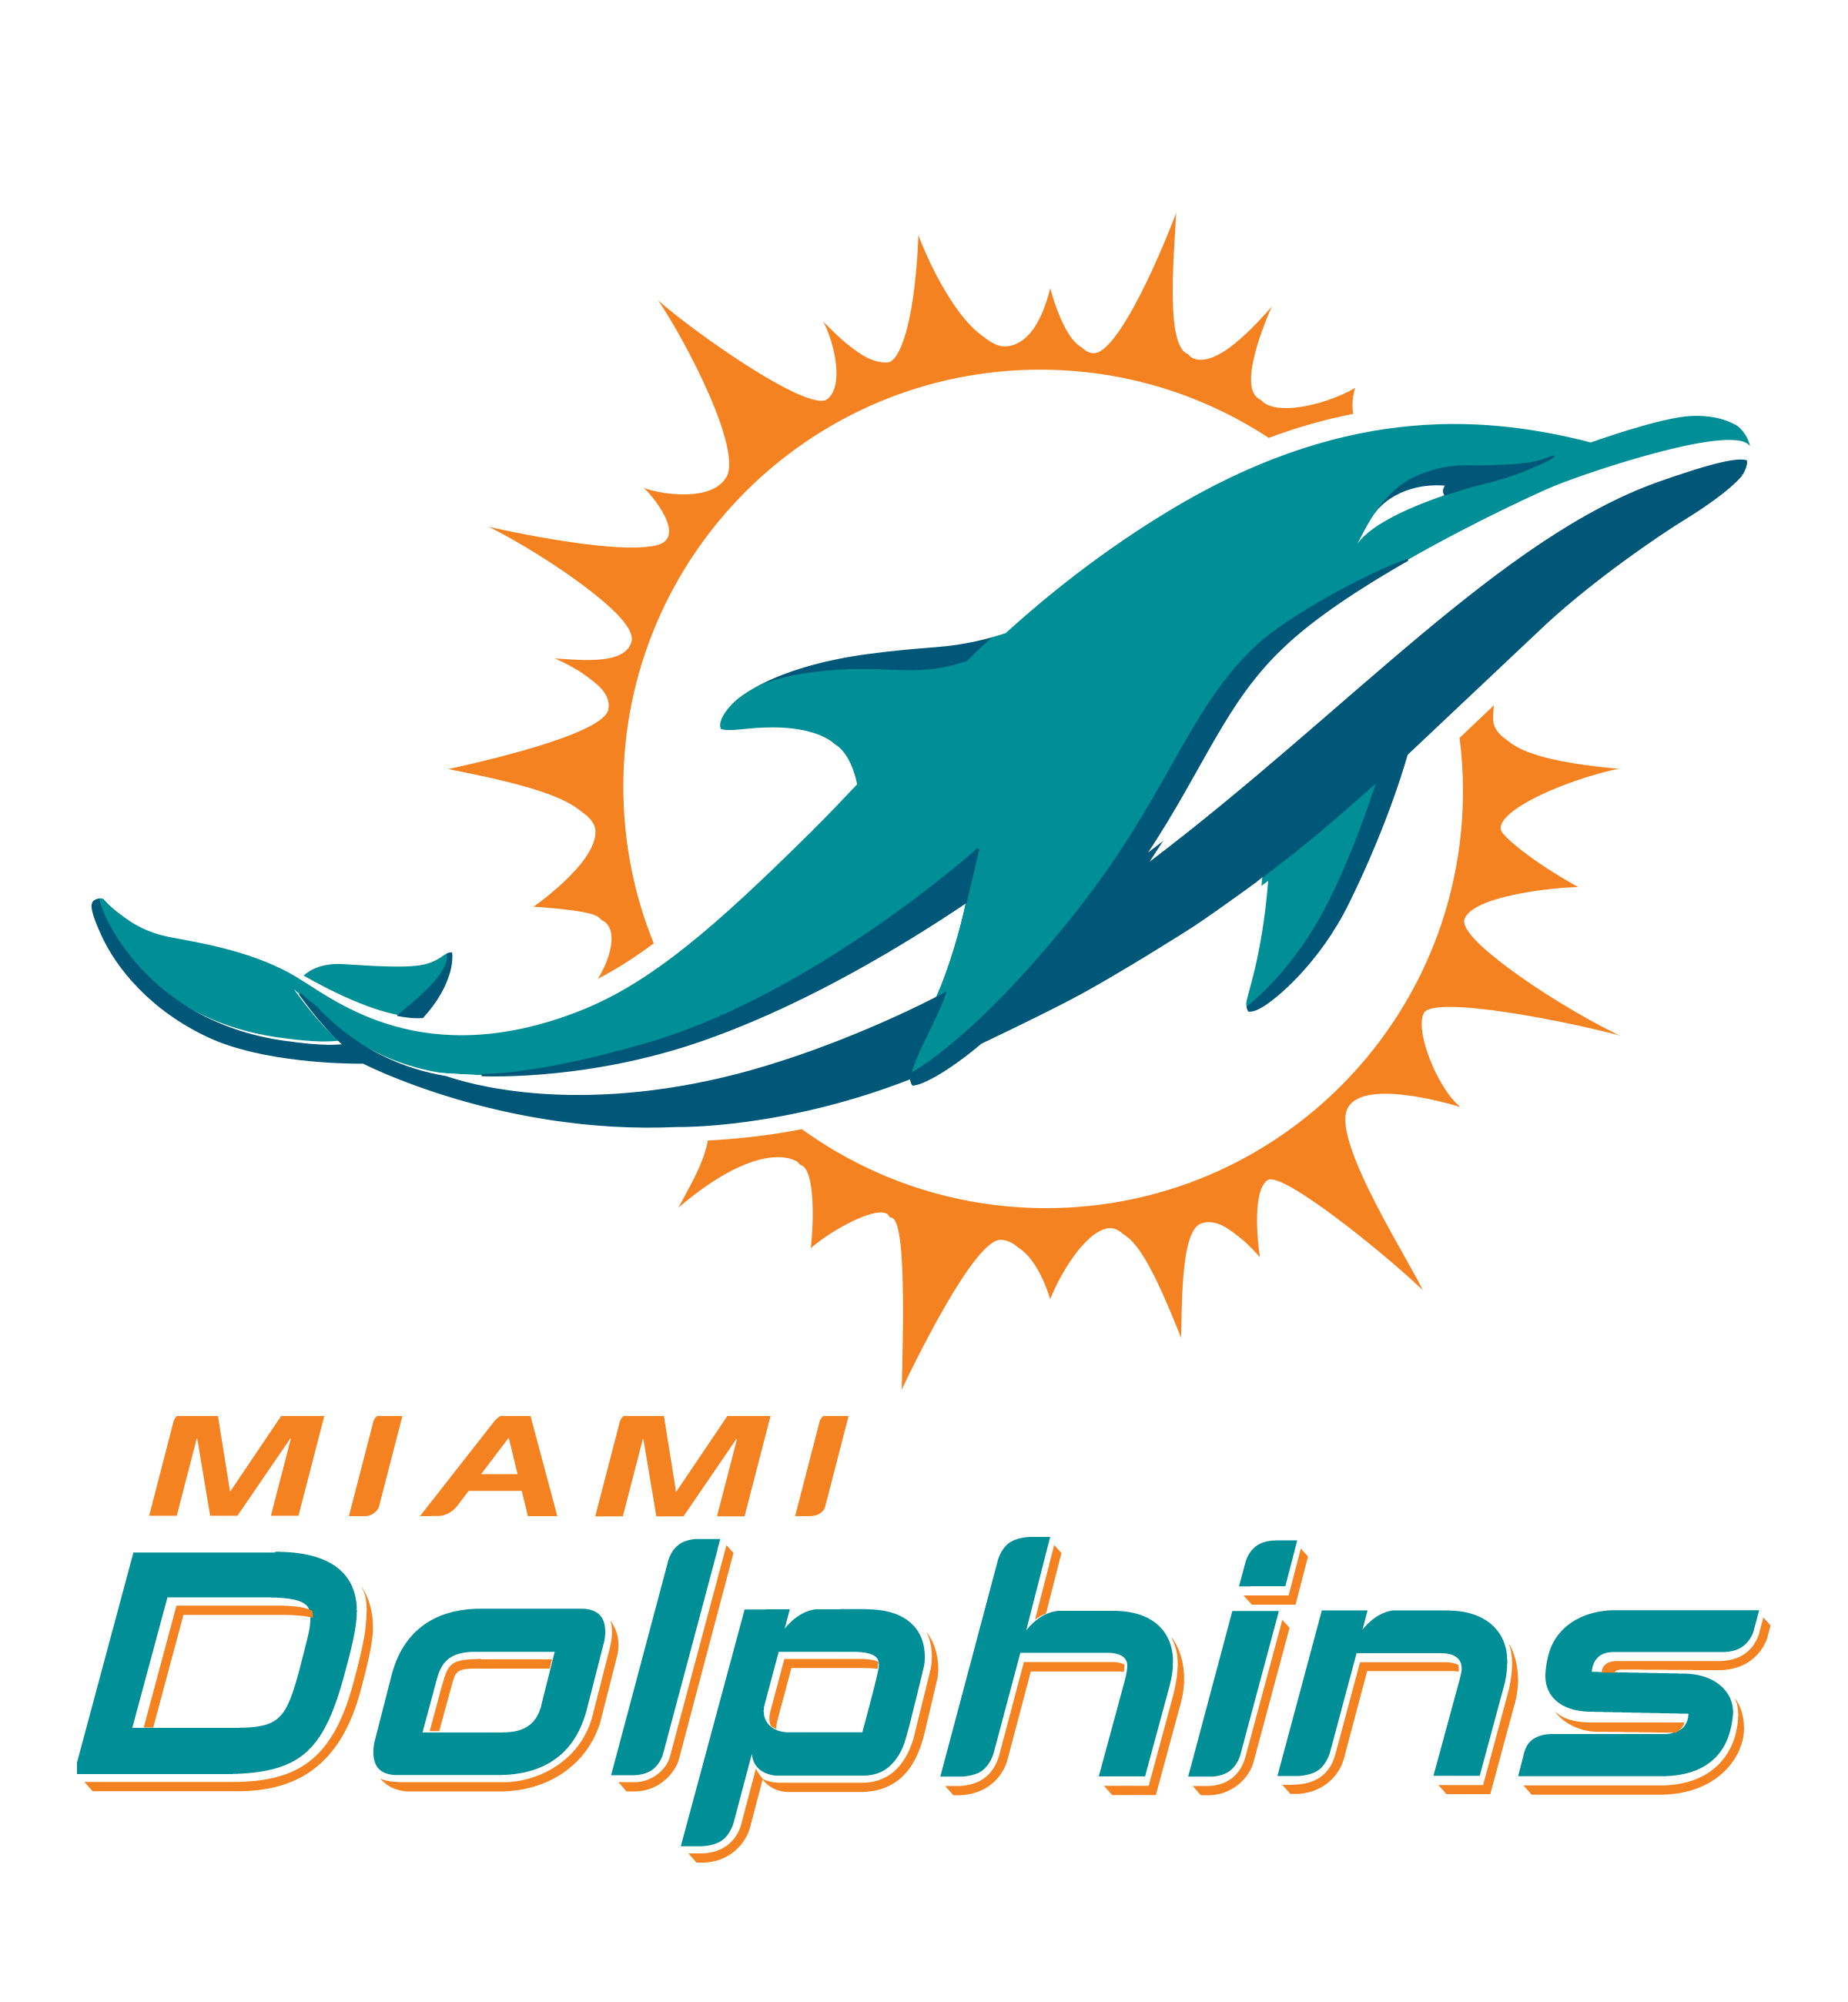 Miami Dolphins Logo - Miami dolphins logo